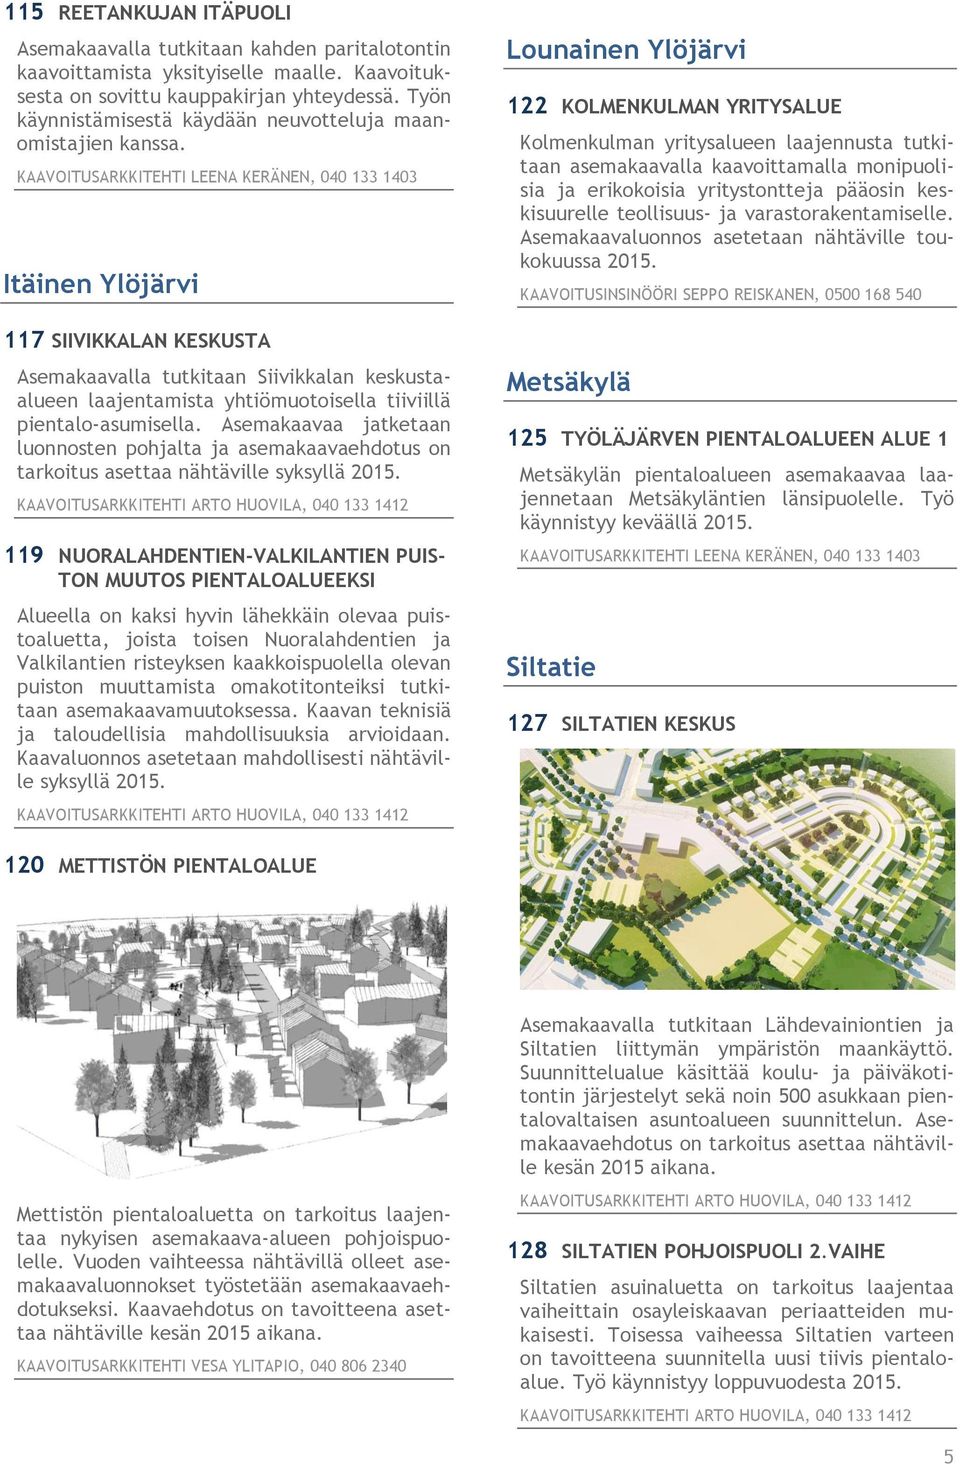 Itäinen Ylöjärvi 117 SIIVIKKALAN KESKUSTA Asemakaavalla tutkitaan Siivikkalan keskustaalueen laajentamista yhtiömuotoisella tiiviillä pientalo-asumisella.